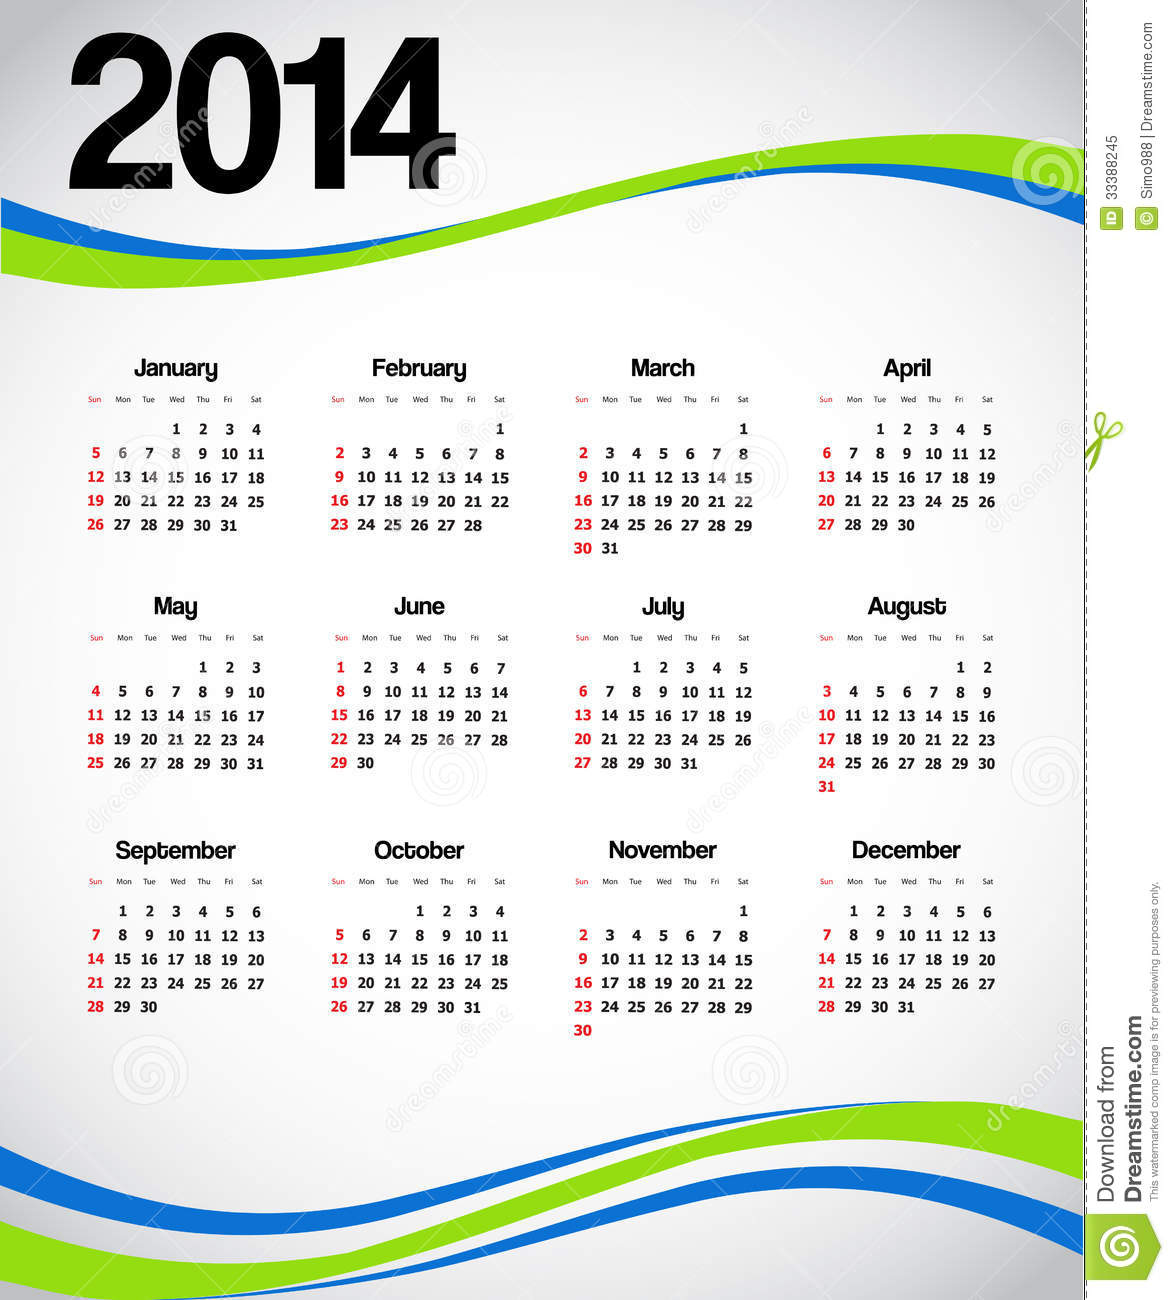 Calendário 2014 do Brasil verde azul